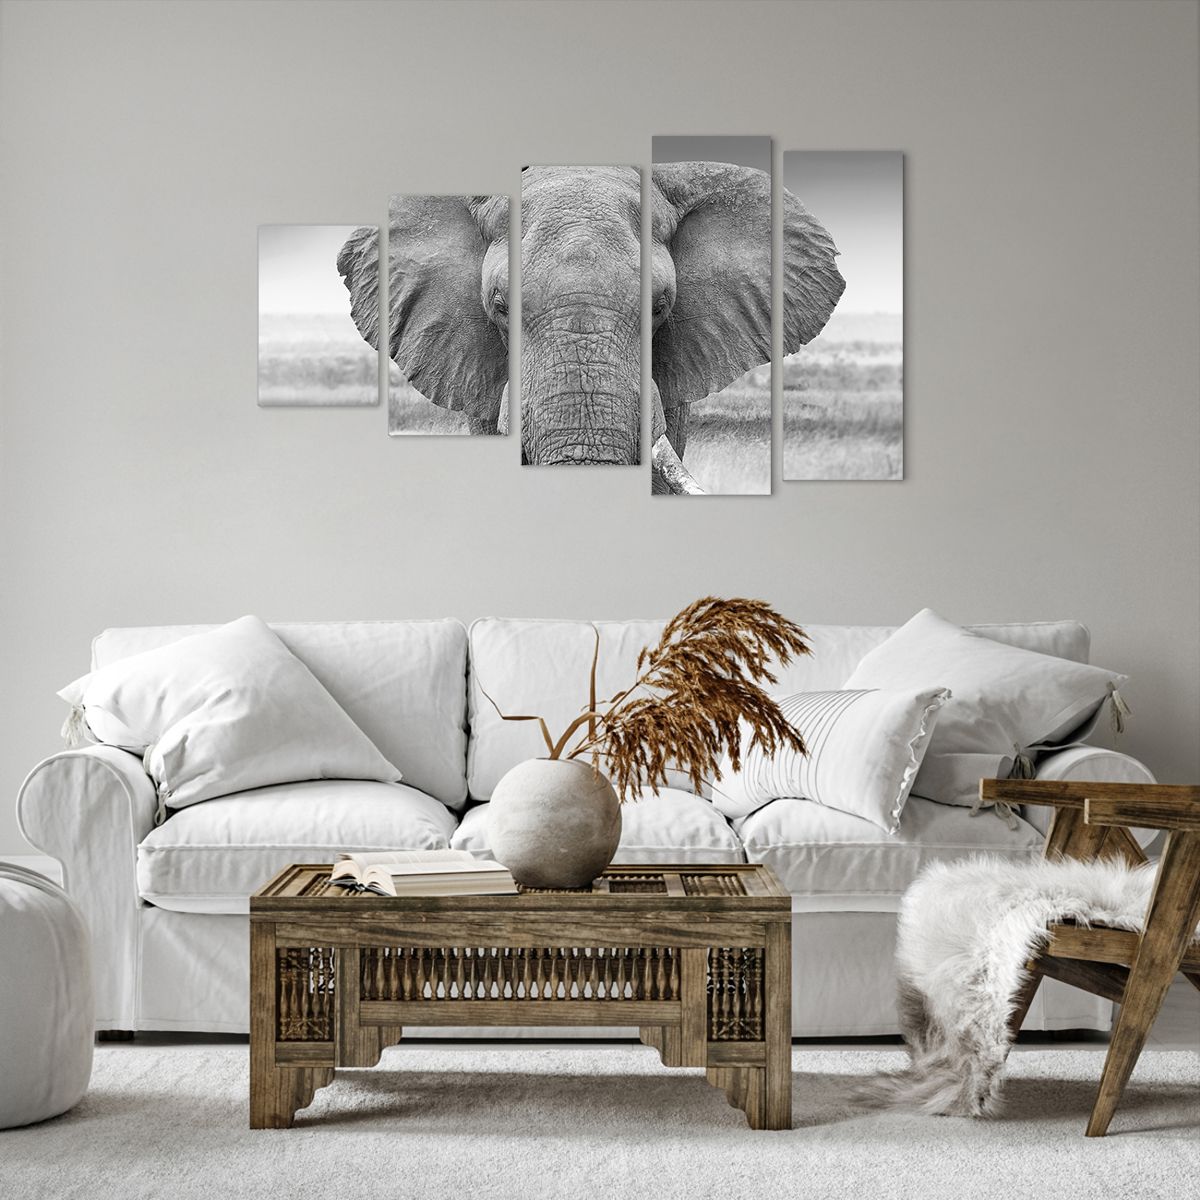 Bild auf Leinwand Elefant, Bild auf Leinwand Afrika, Bild auf Leinwand Tiere, Bild auf Leinwand Natur, Bild auf Leinwand Schwarz Und Weiß